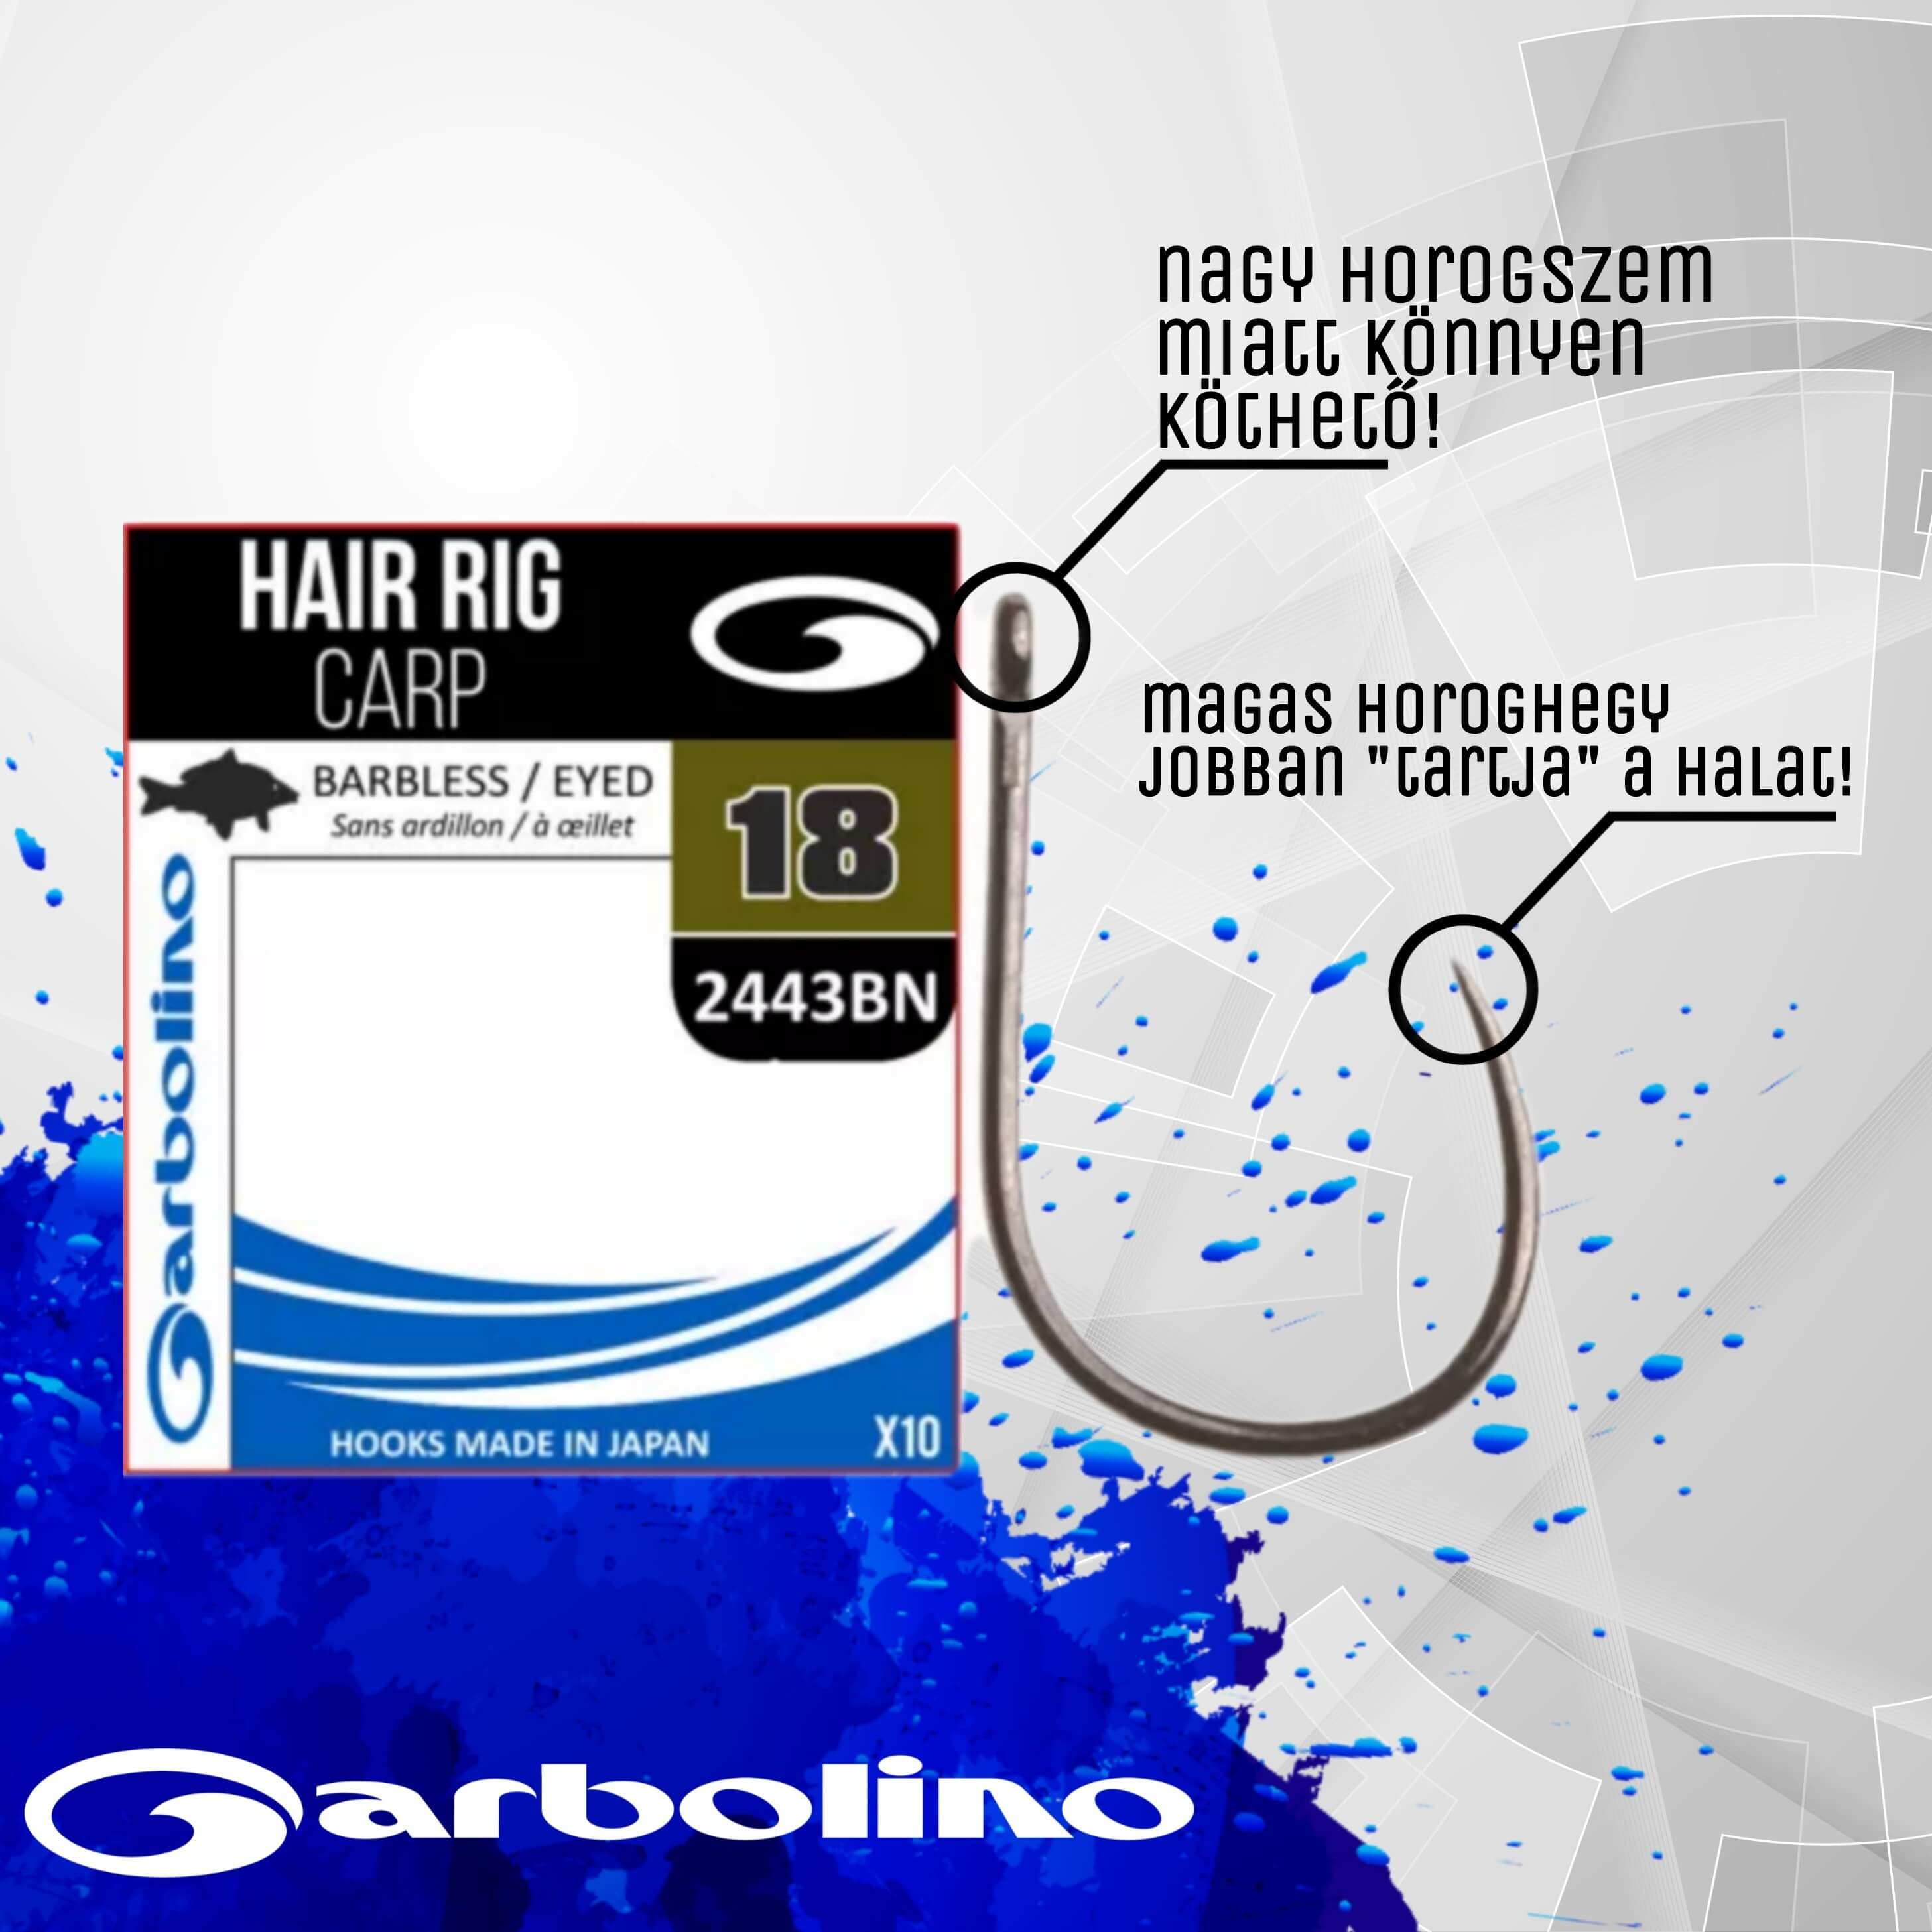 Garbolino Carp füles, szakáll nélküli horog